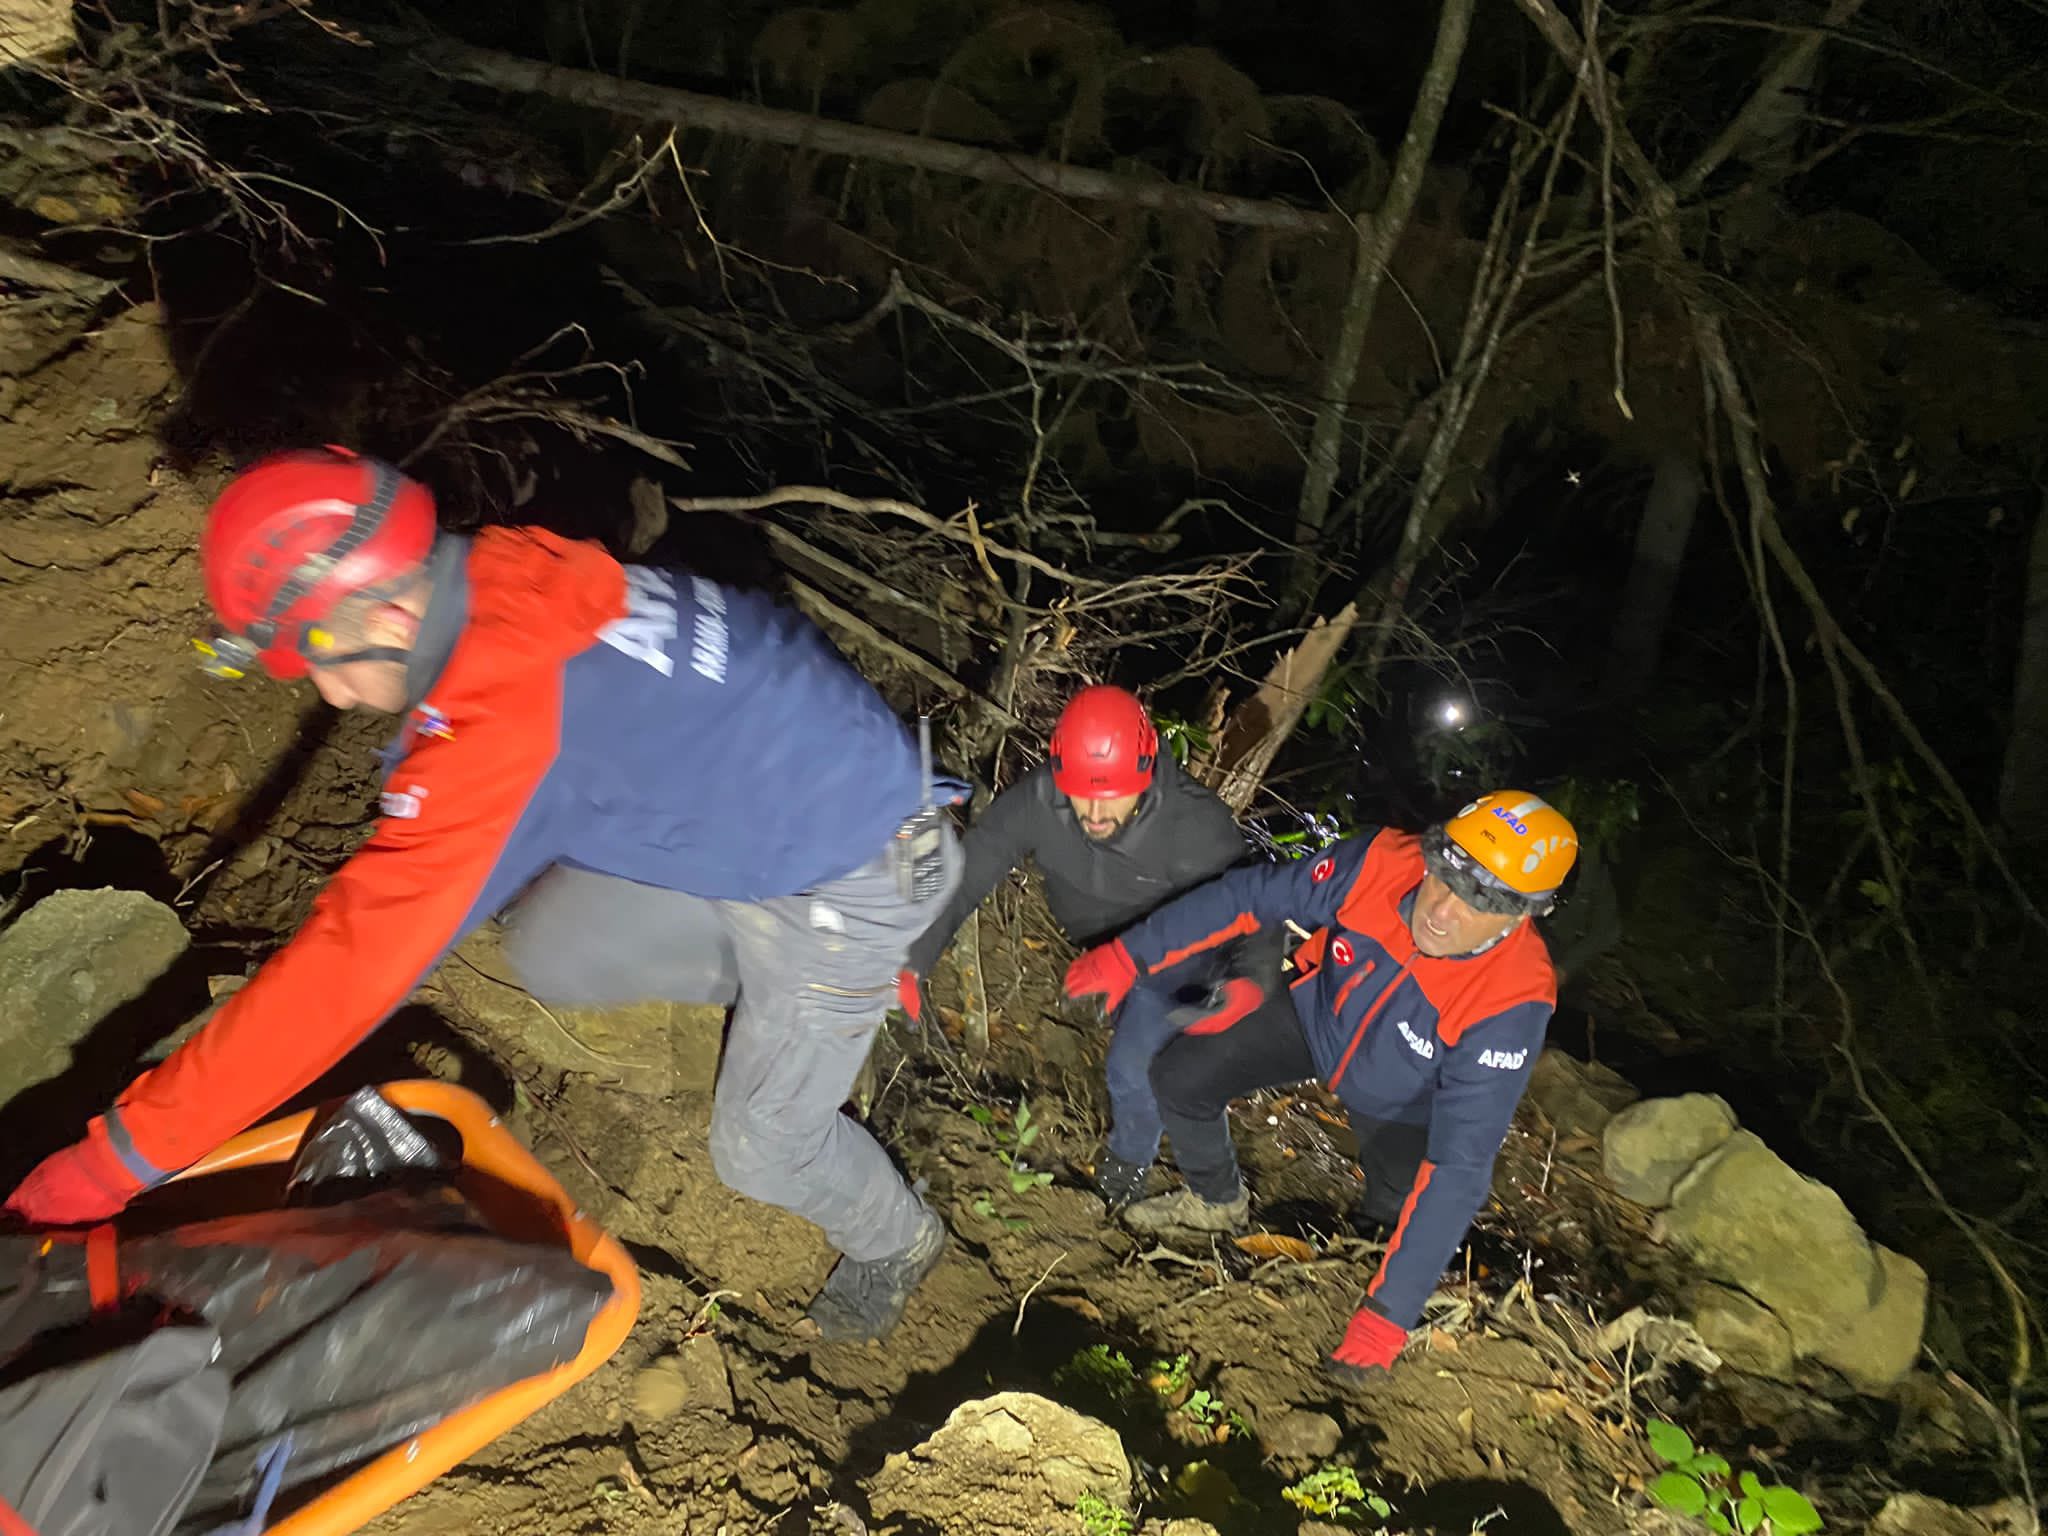 Artvin'de ormanda ağaç keserken uçurumdan düşen kişi öldü